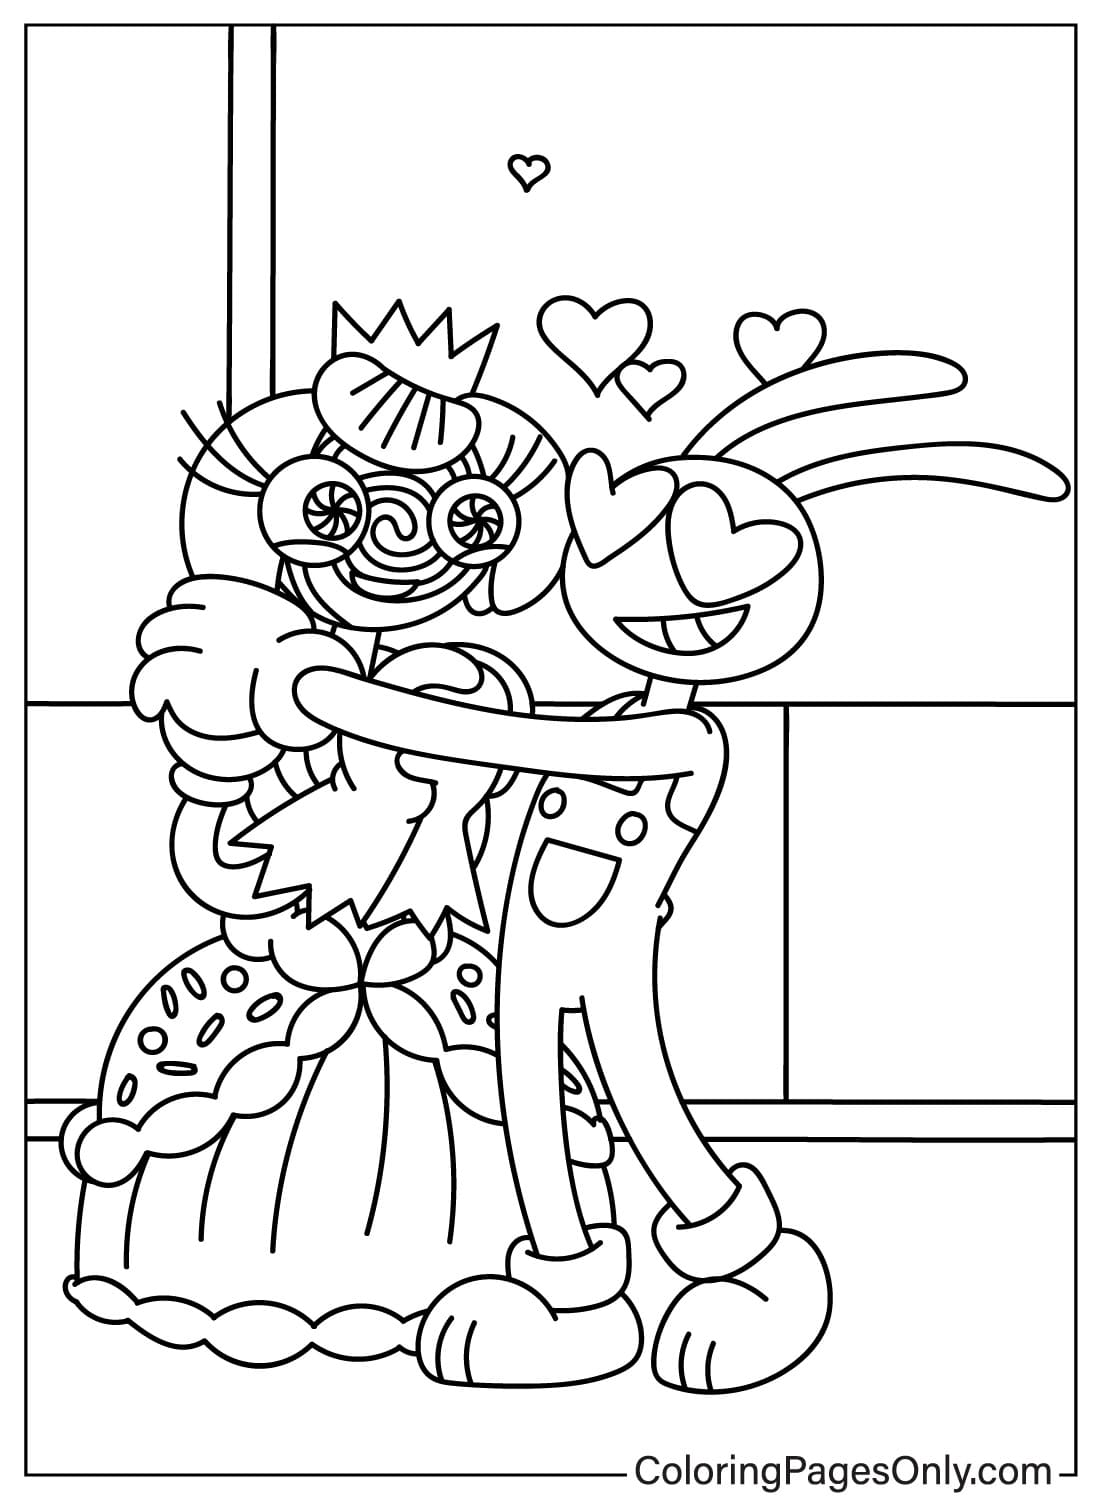 Princess Loolilalu and Jax Coloring Page from Jax